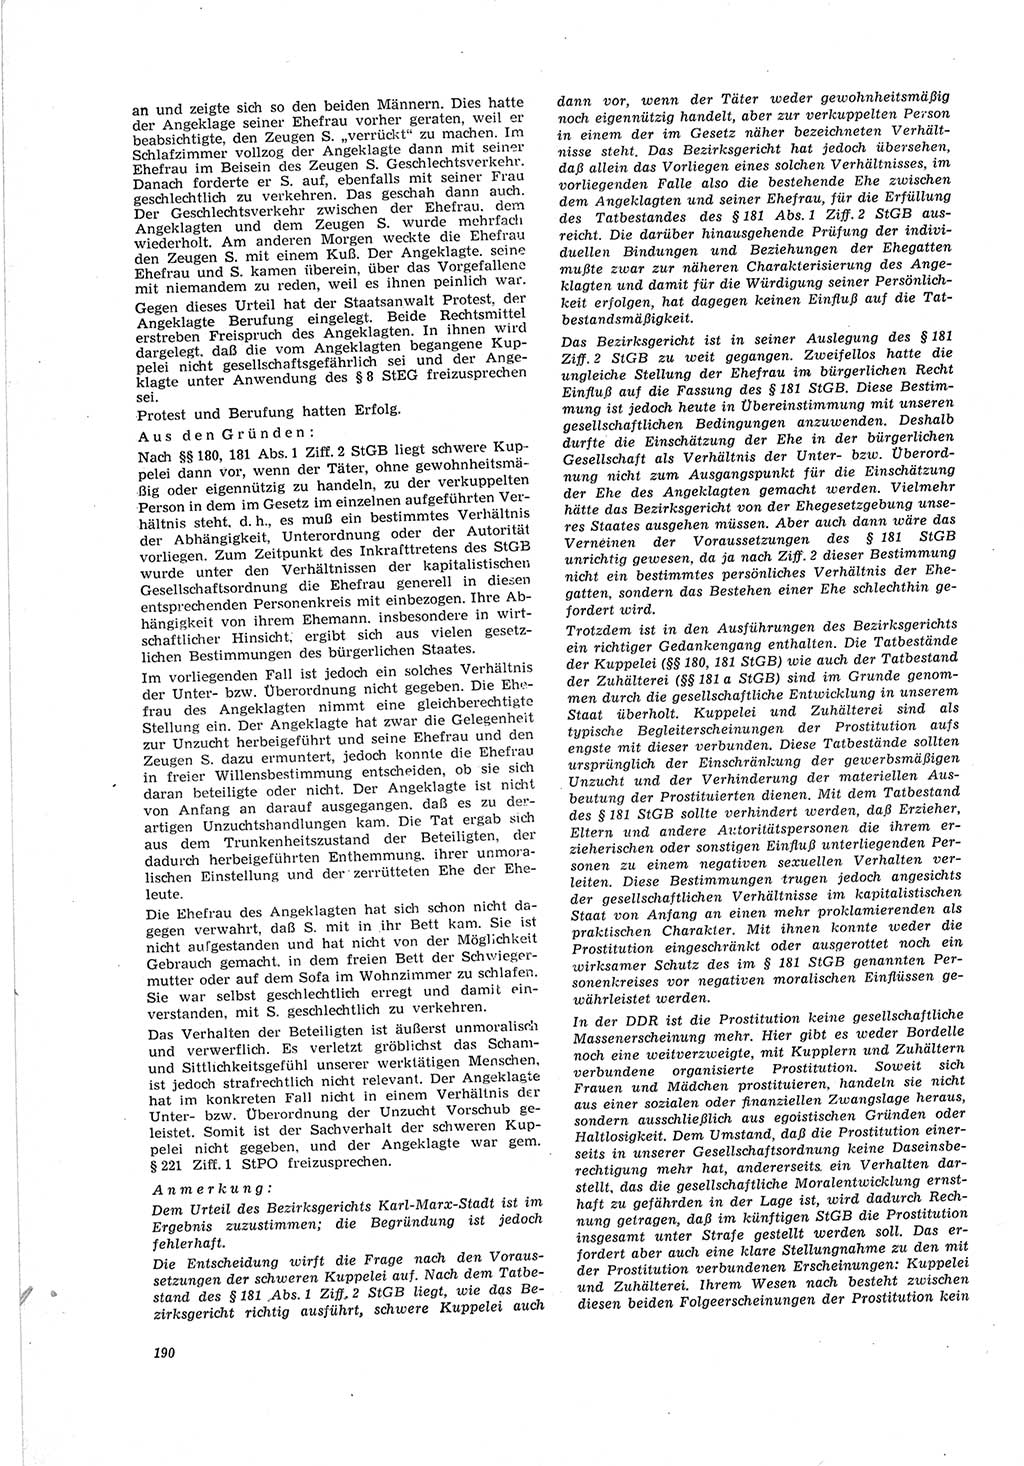 Neue Justiz (NJ), Zeitschrift für Recht und Rechtswissenschaft [Deutsche Demokratische Republik (DDR)], 19. Jahrgang 1965, Seite 190 (NJ DDR 1965, S. 190)